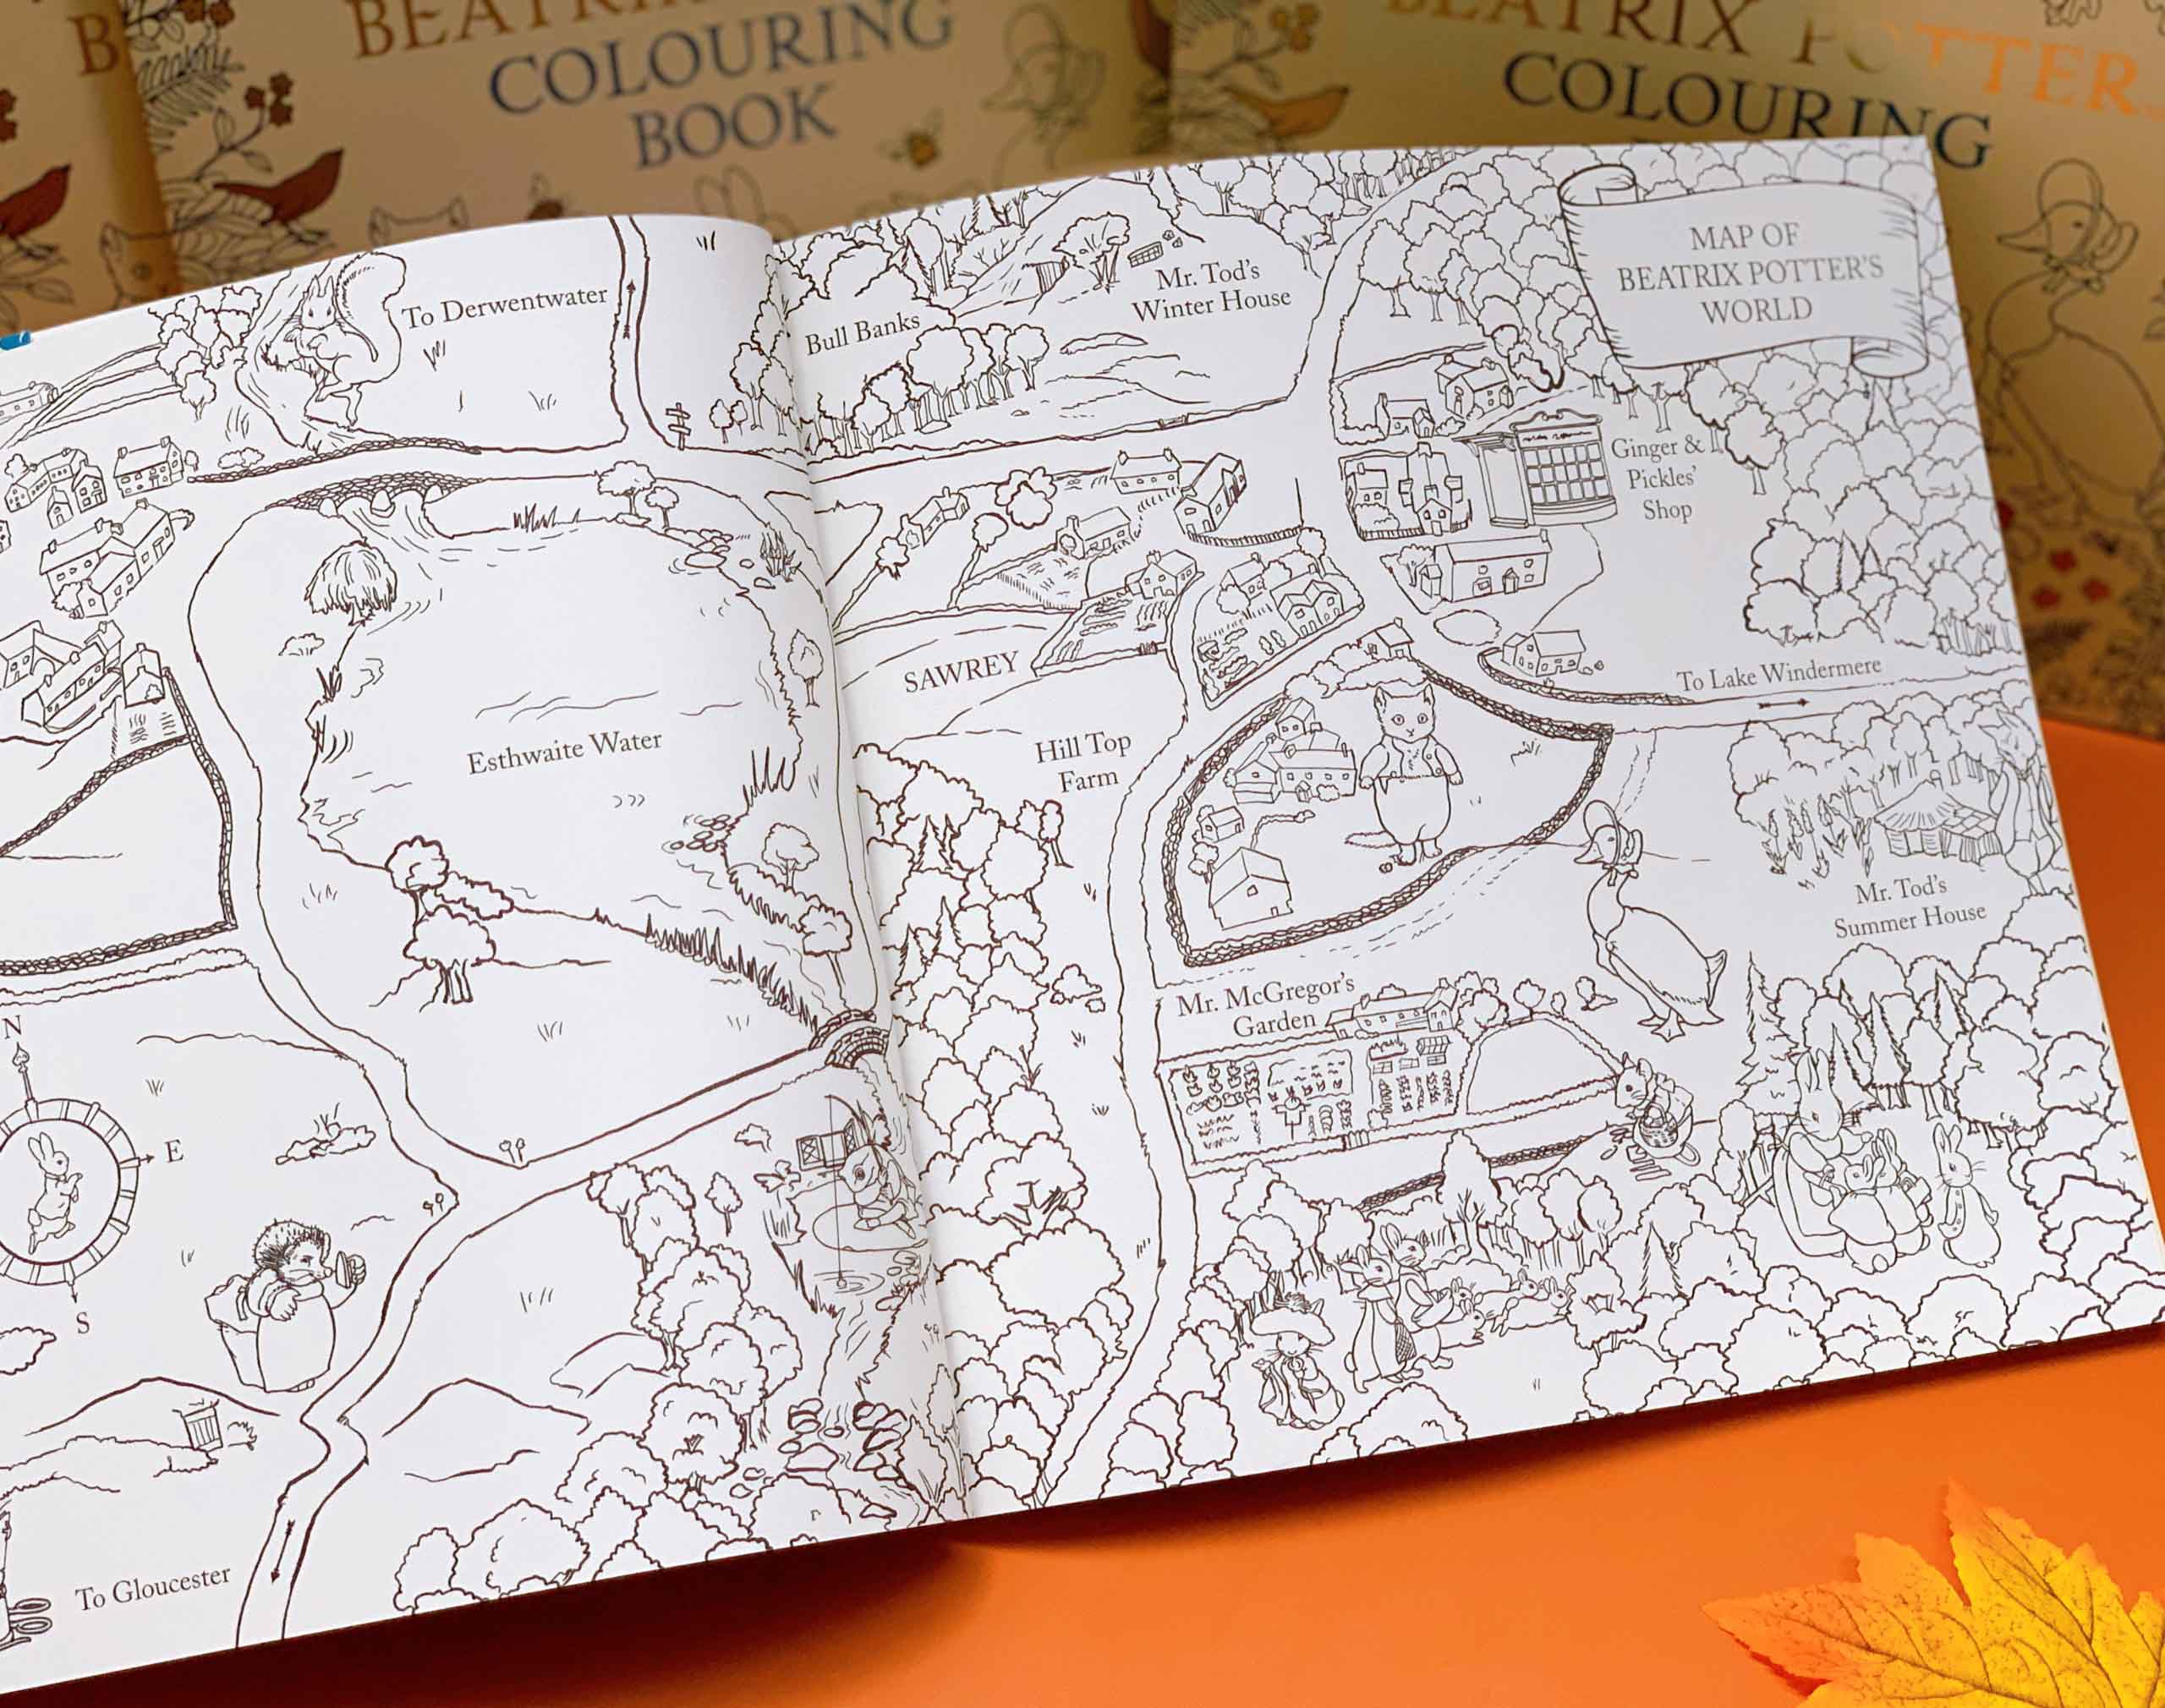 Sách tô màu Beatrix Potter sẽ đem đến cho bạn những giây phút thư giãn sau những giờ học và làm việc căng thẳng. Hãy xem hình bìa sách và các trang tô màu đẹp mắt để cảm nhận sự tinh tế và dễ thương của nhân vật Beatrix Potter.